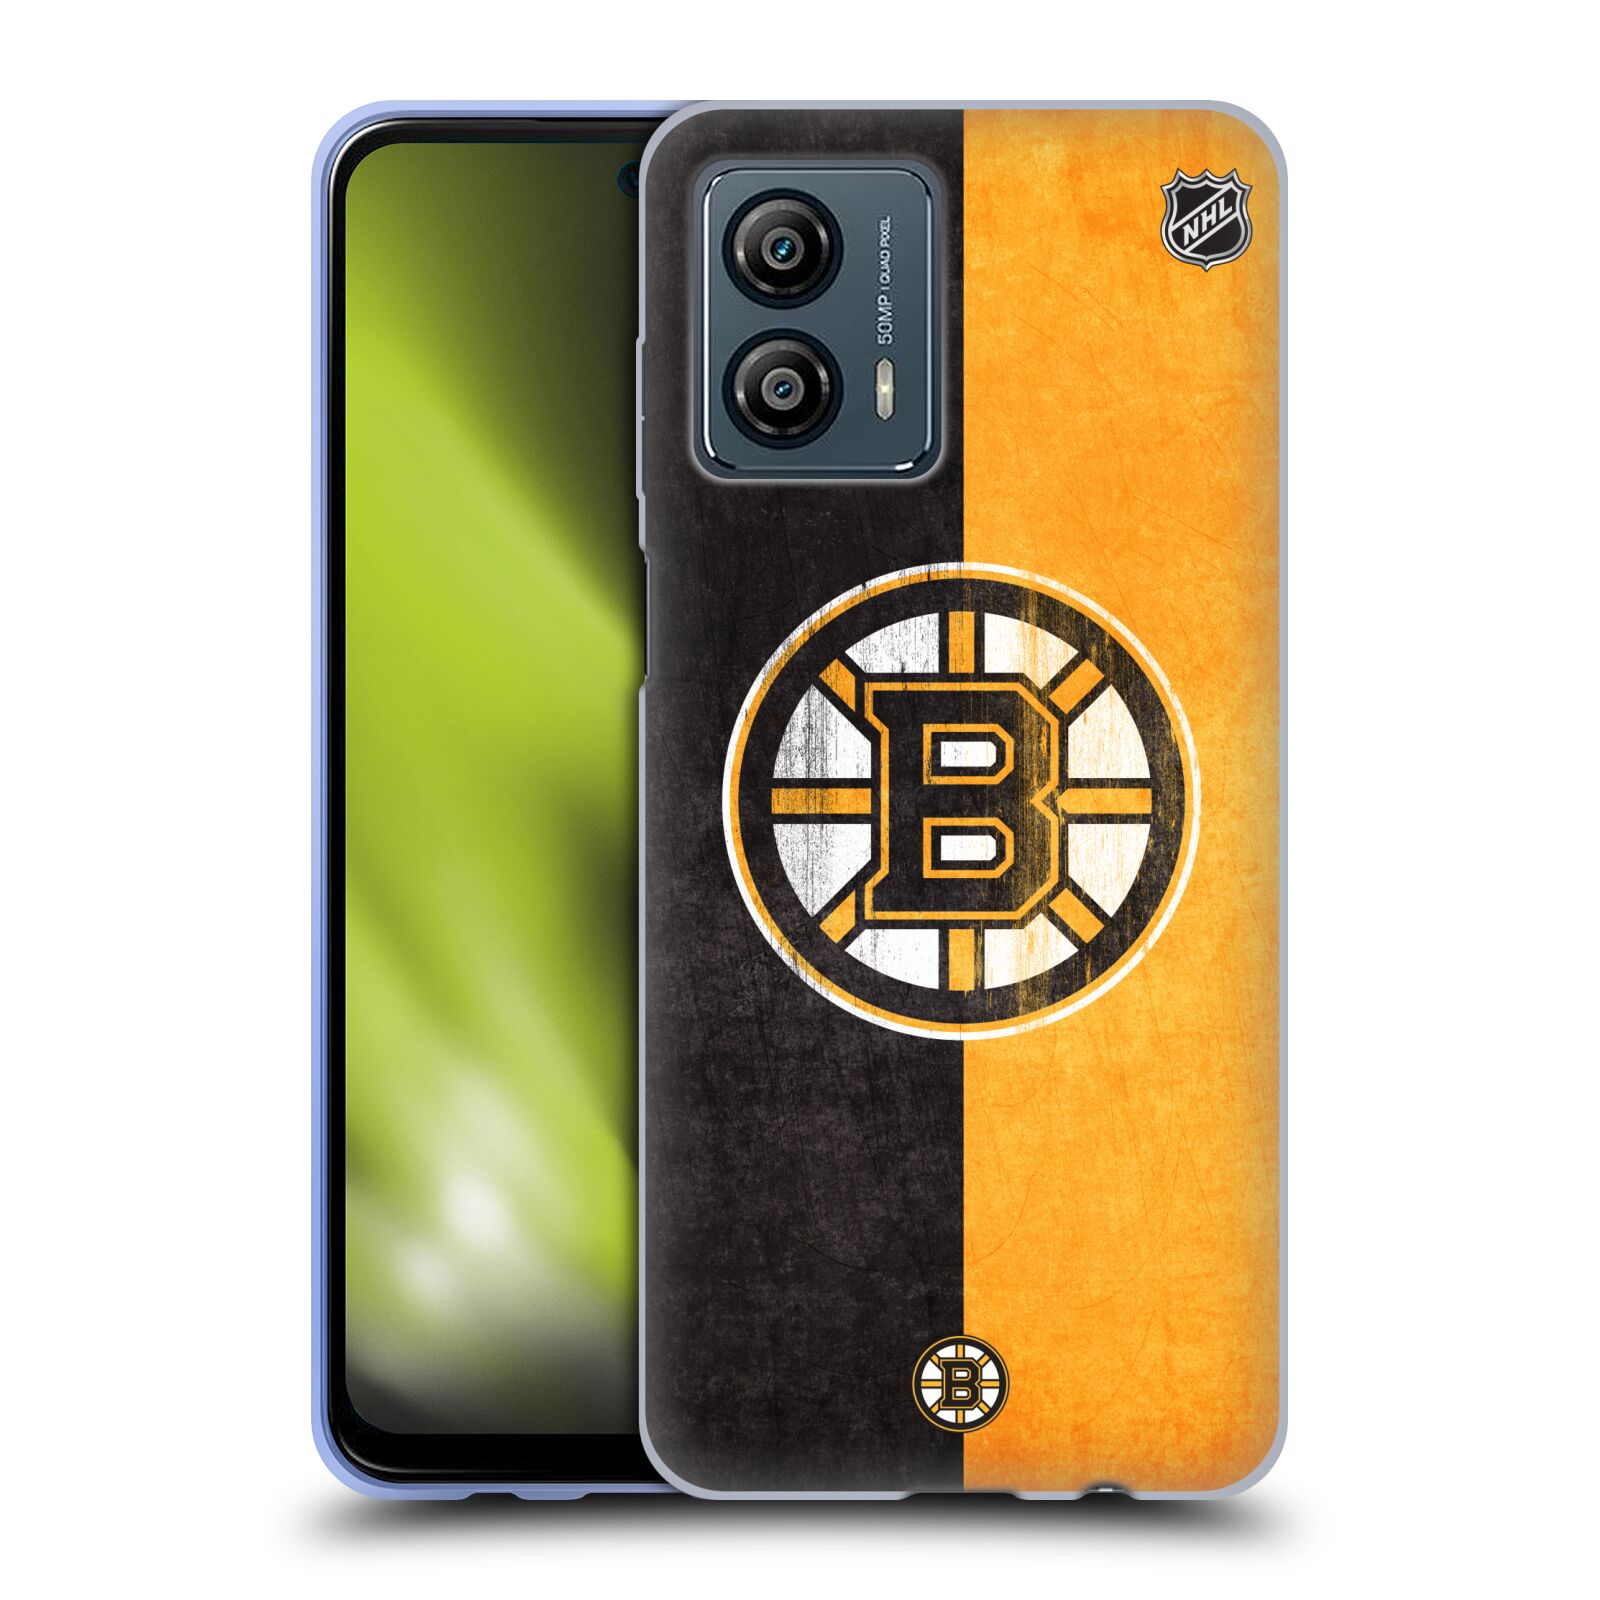 Silikonové pouzdro na mobil Motorola Moto G53 5G - NHL - Půlené logo Boston Bruins (Silikonový kryt, obal, pouzdro na mobilní telefon Motorola Moto G53 5G s licencovaným motivem NHL - Půlené logo Boston Bruins)